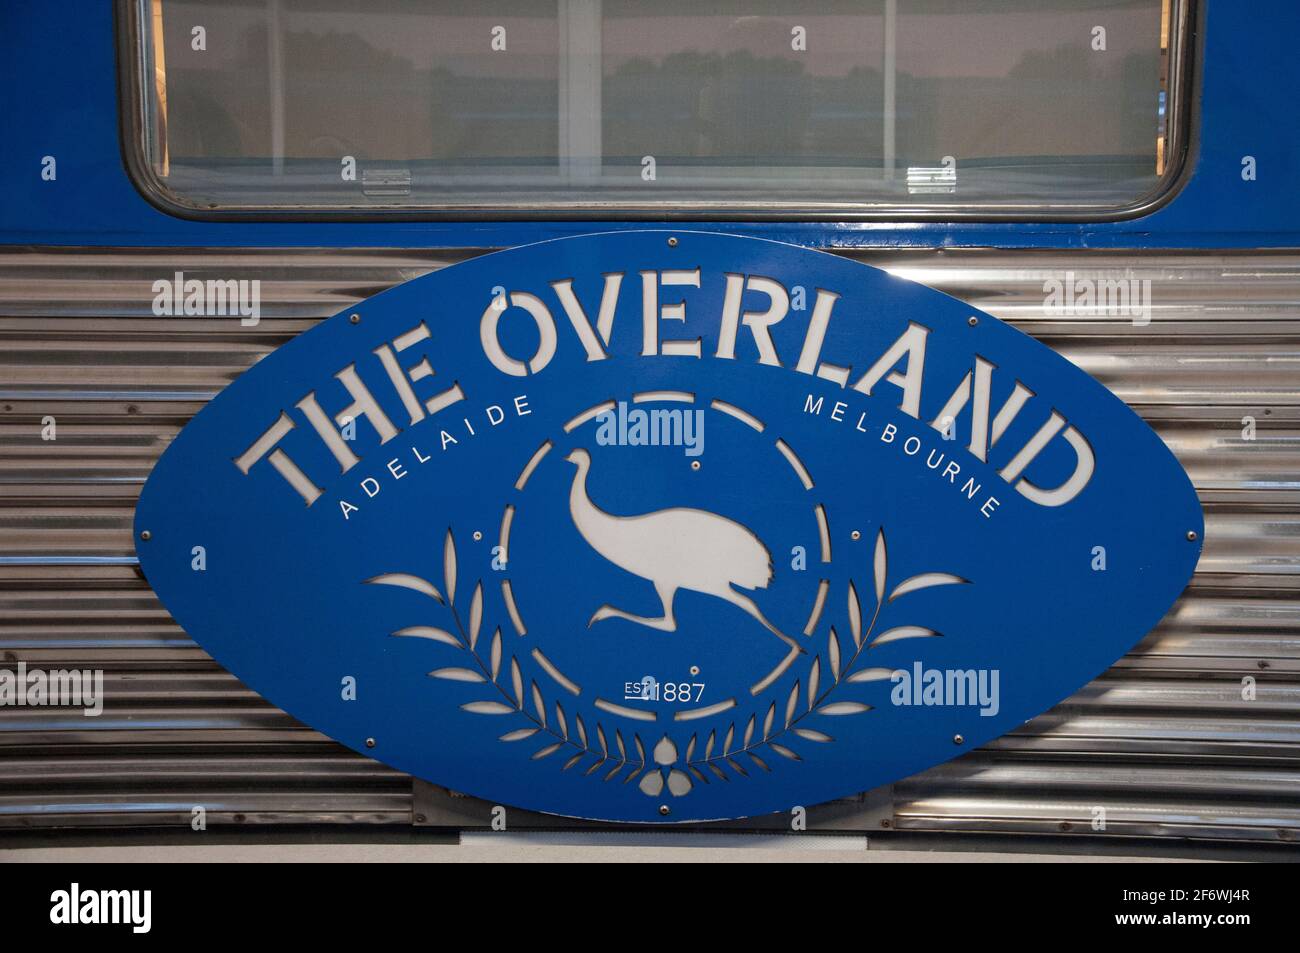 Le train Overland au terminal Adelaide Parklands, en Australie méridionale, un service de passagers entre Adélaïde et Melbourne. Banque D'Images